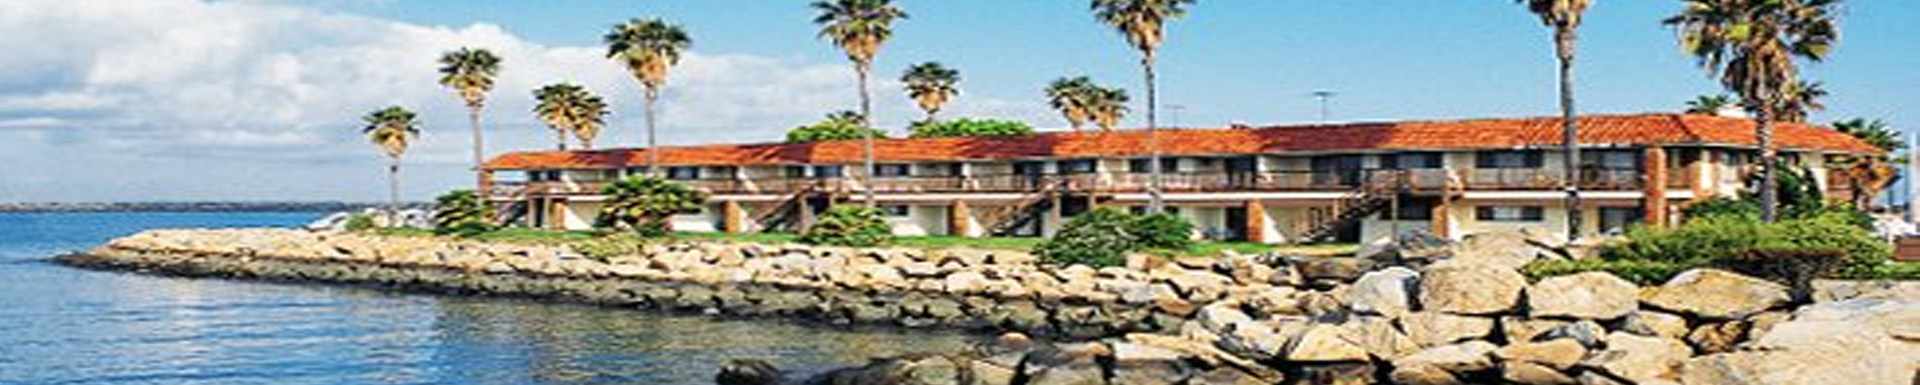 Vacation Internationale - Oceanside Marina Inn